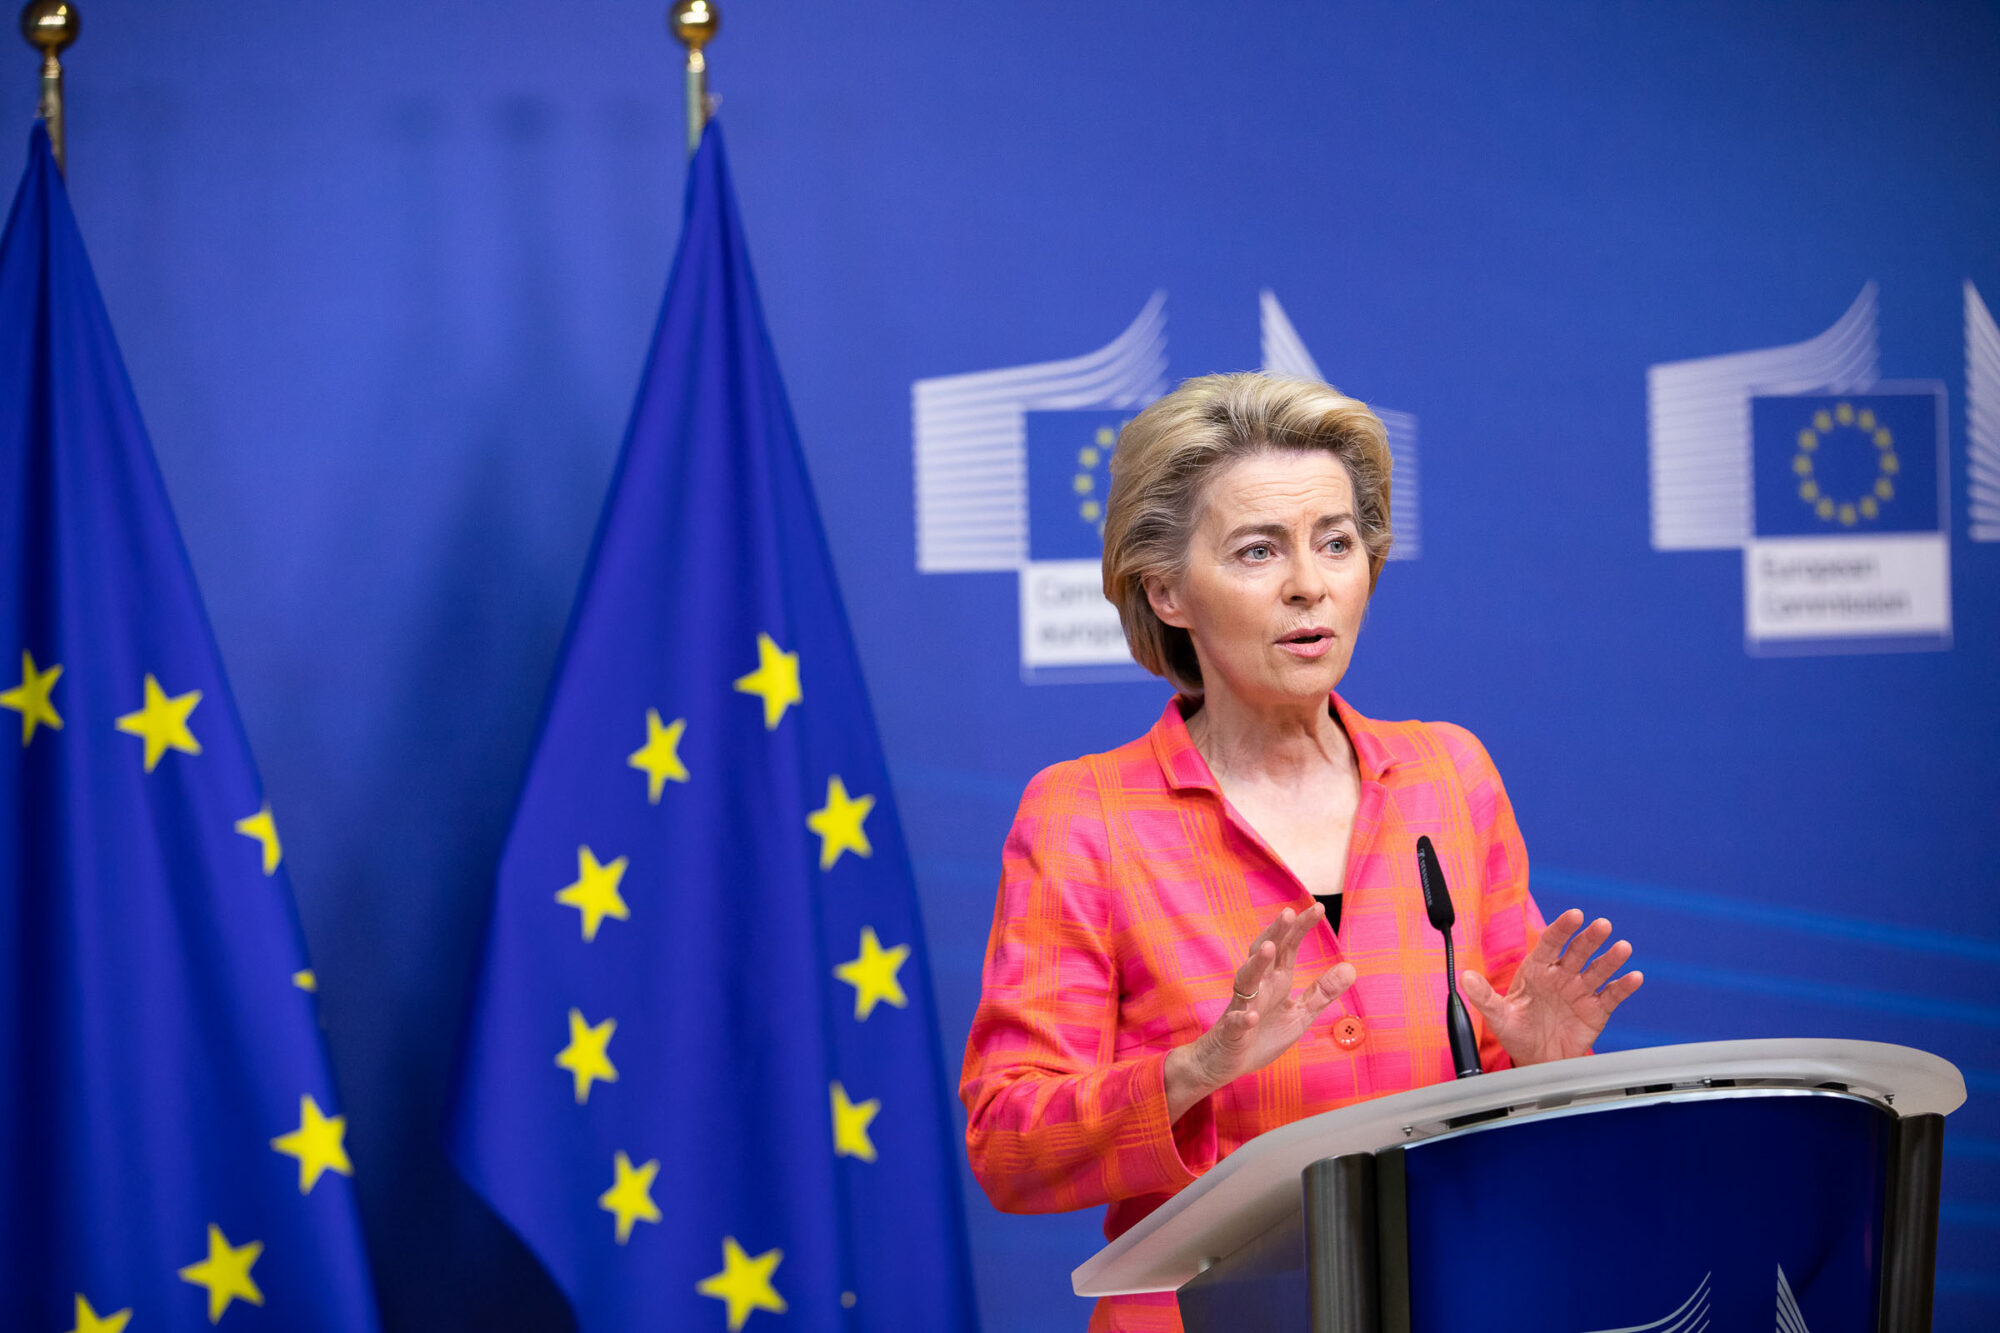 Statement of Ursula von der Leyen, President of the European Com